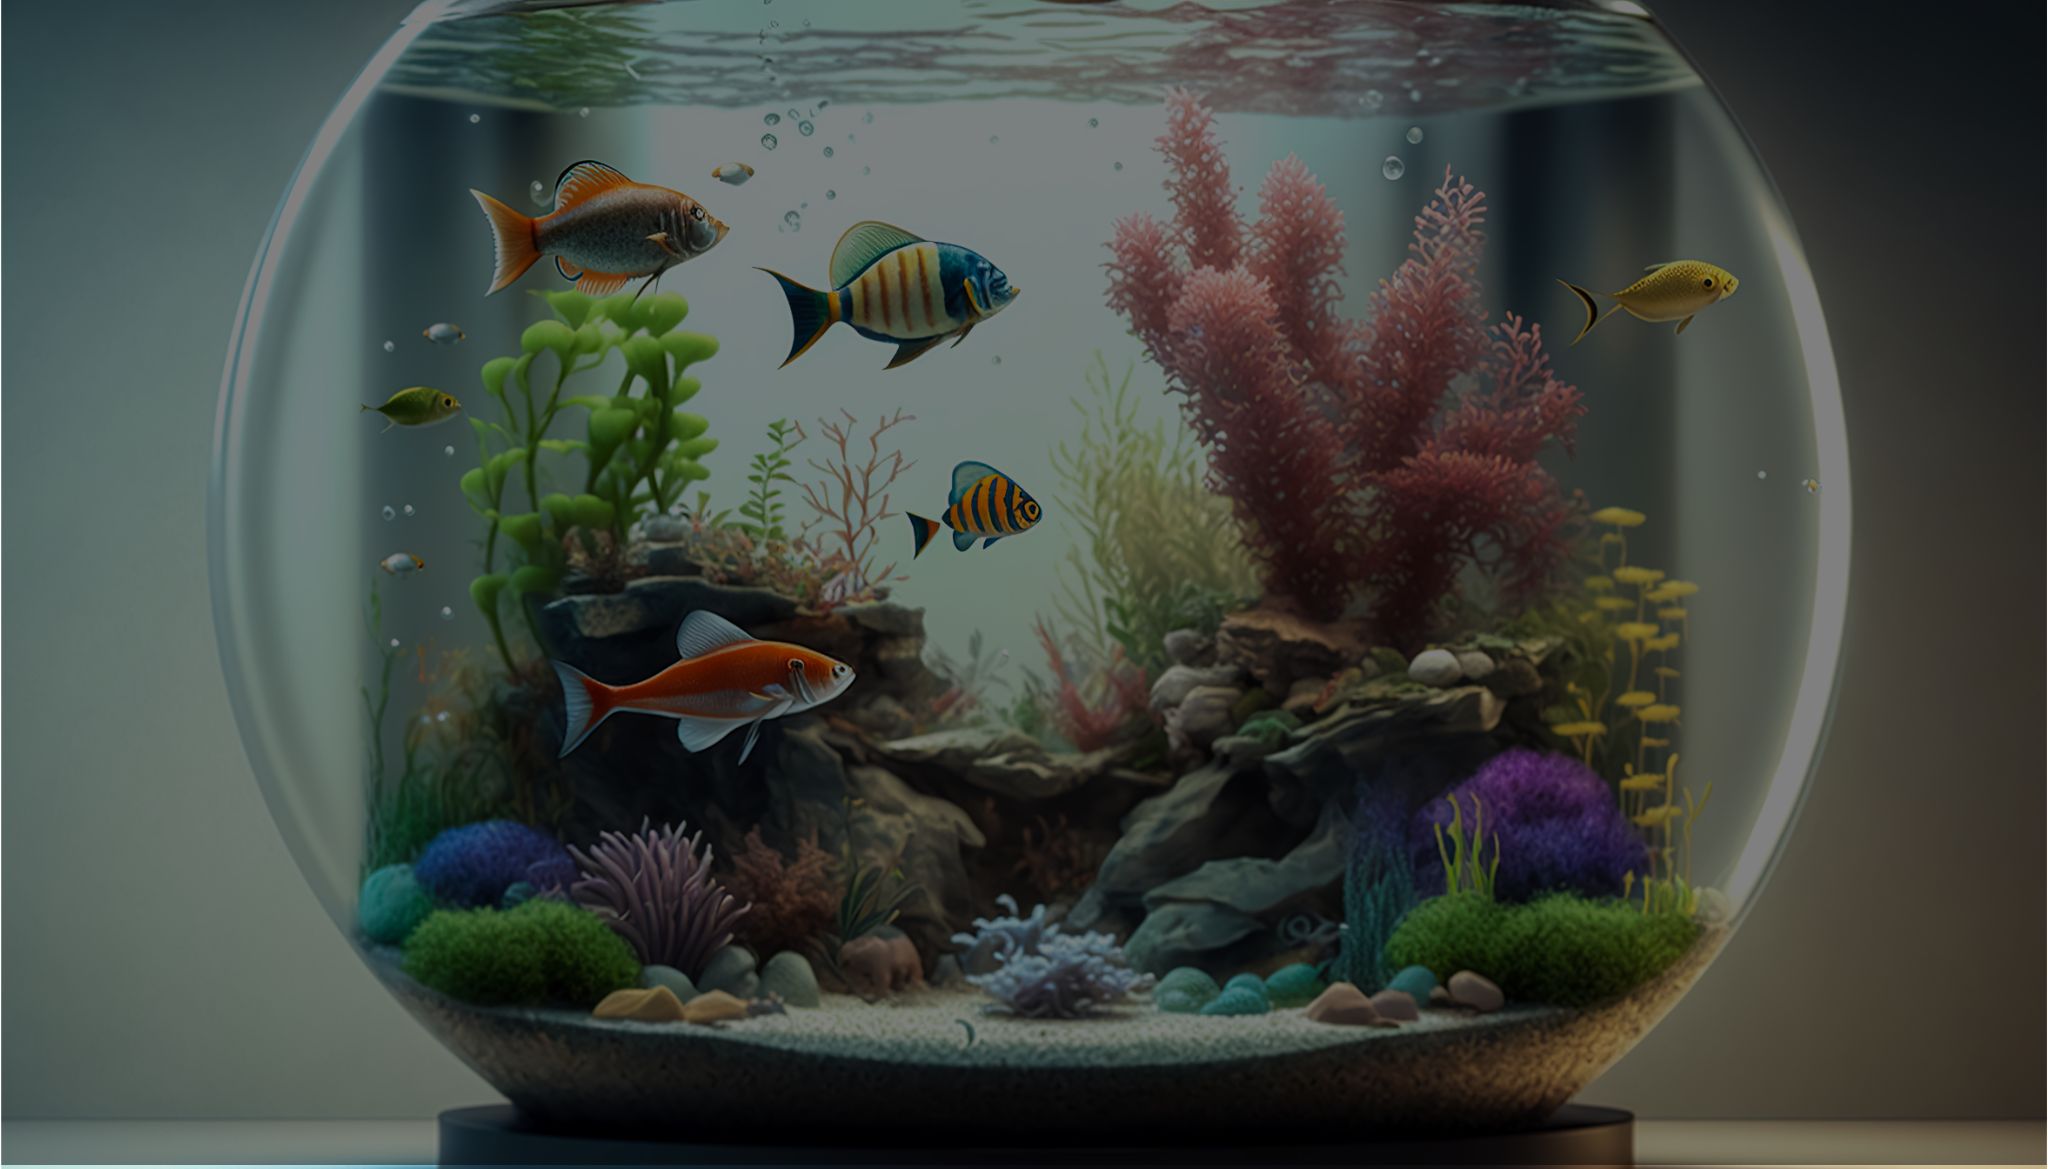 Aquatic Plants: 7 Plants For Your Aquarium